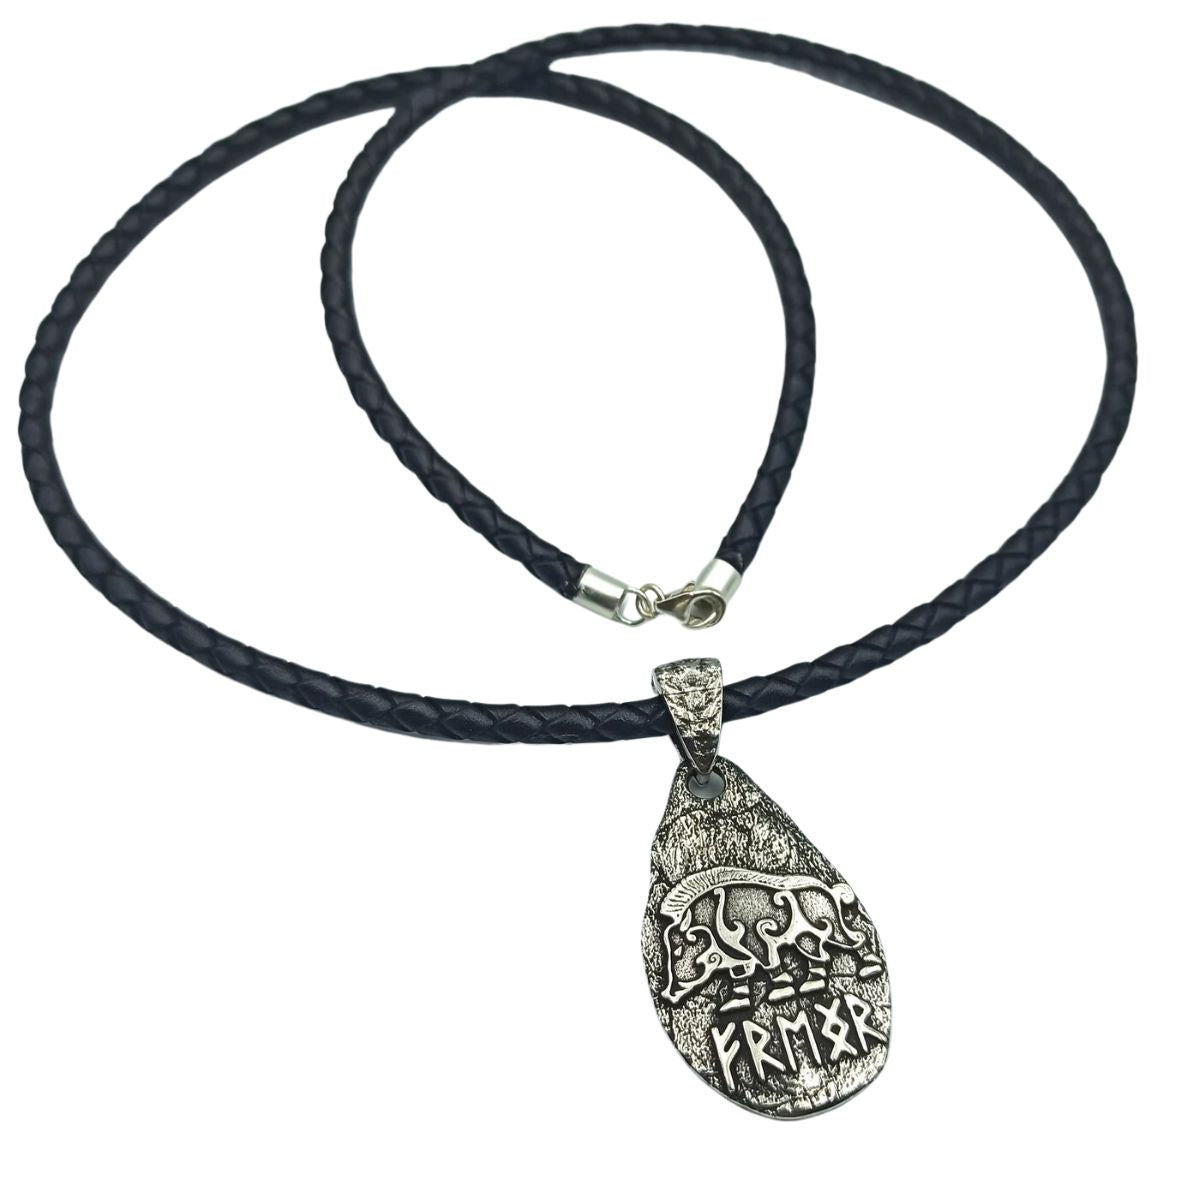 Freyr boar silver pendant + Braided necklace  